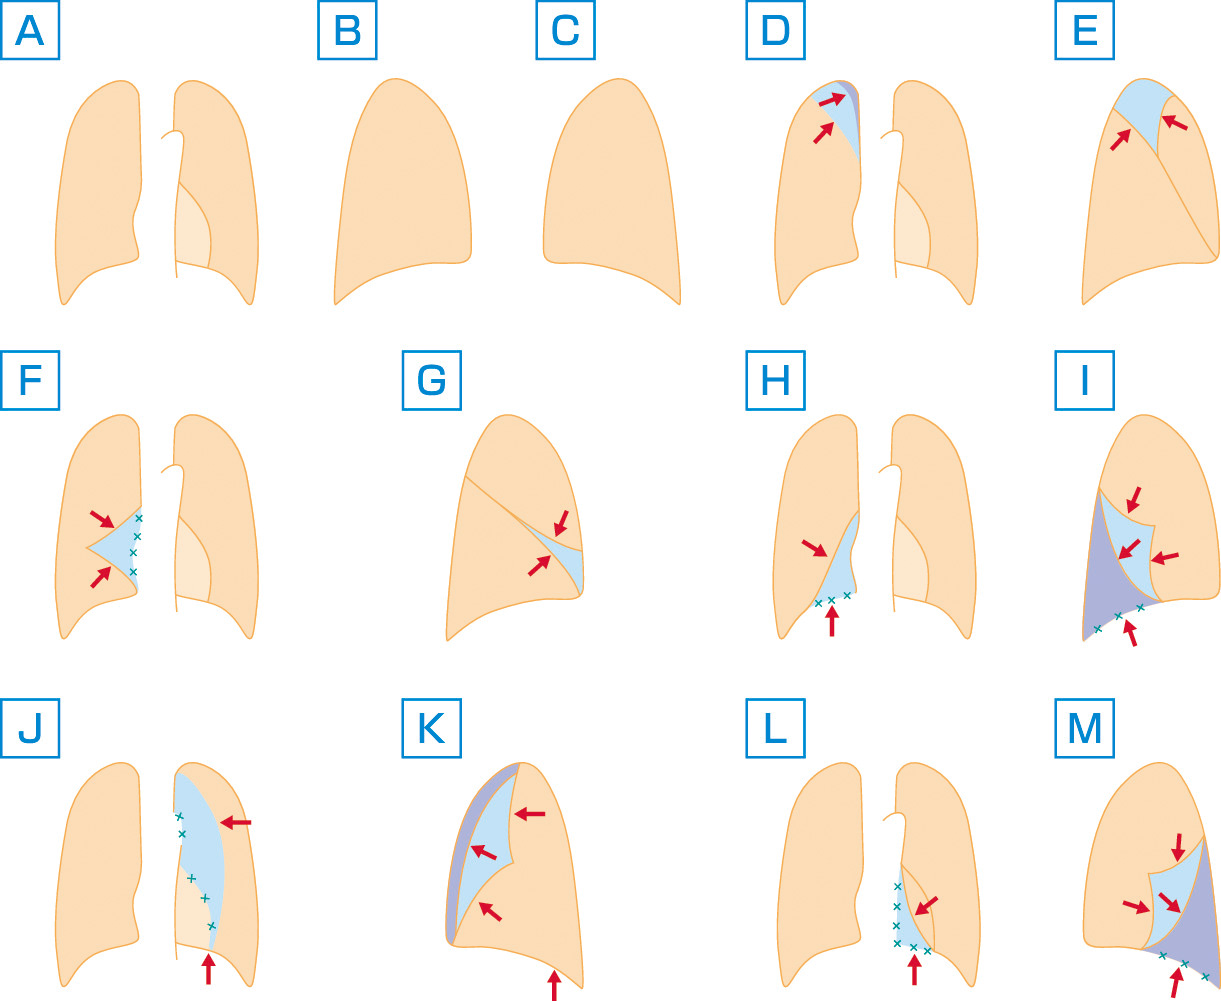 ⓔ図10-7-1　各肺葉無気肺の胸部単純X線所見 (模式図) A：正常正面，B：正常側面 (右肺)，C：正常側面 (左肺)，D：右肺上葉無気肺 (正面)，E：右肺上葉無気肺 (側面)，F：右肺中葉無気肺 (正面)，G：右肺中葉無気肺 (側面)，H：右肺下葉無気肺 (正面)，I：右肺下葉無気肺 (側面)，J：左肺上葉無気肺 (正面)，K：左肺上葉無気肺 (側面)，L：左肺下葉無気肺 (正面)，M：左肺下葉無気肺 (側面). 水色→青色は無気肺の進行を表す．赤矢印は偏位を示す．水色の x 印はシルエットの不鮮明化 (シルエットサイン陽性) を示す．